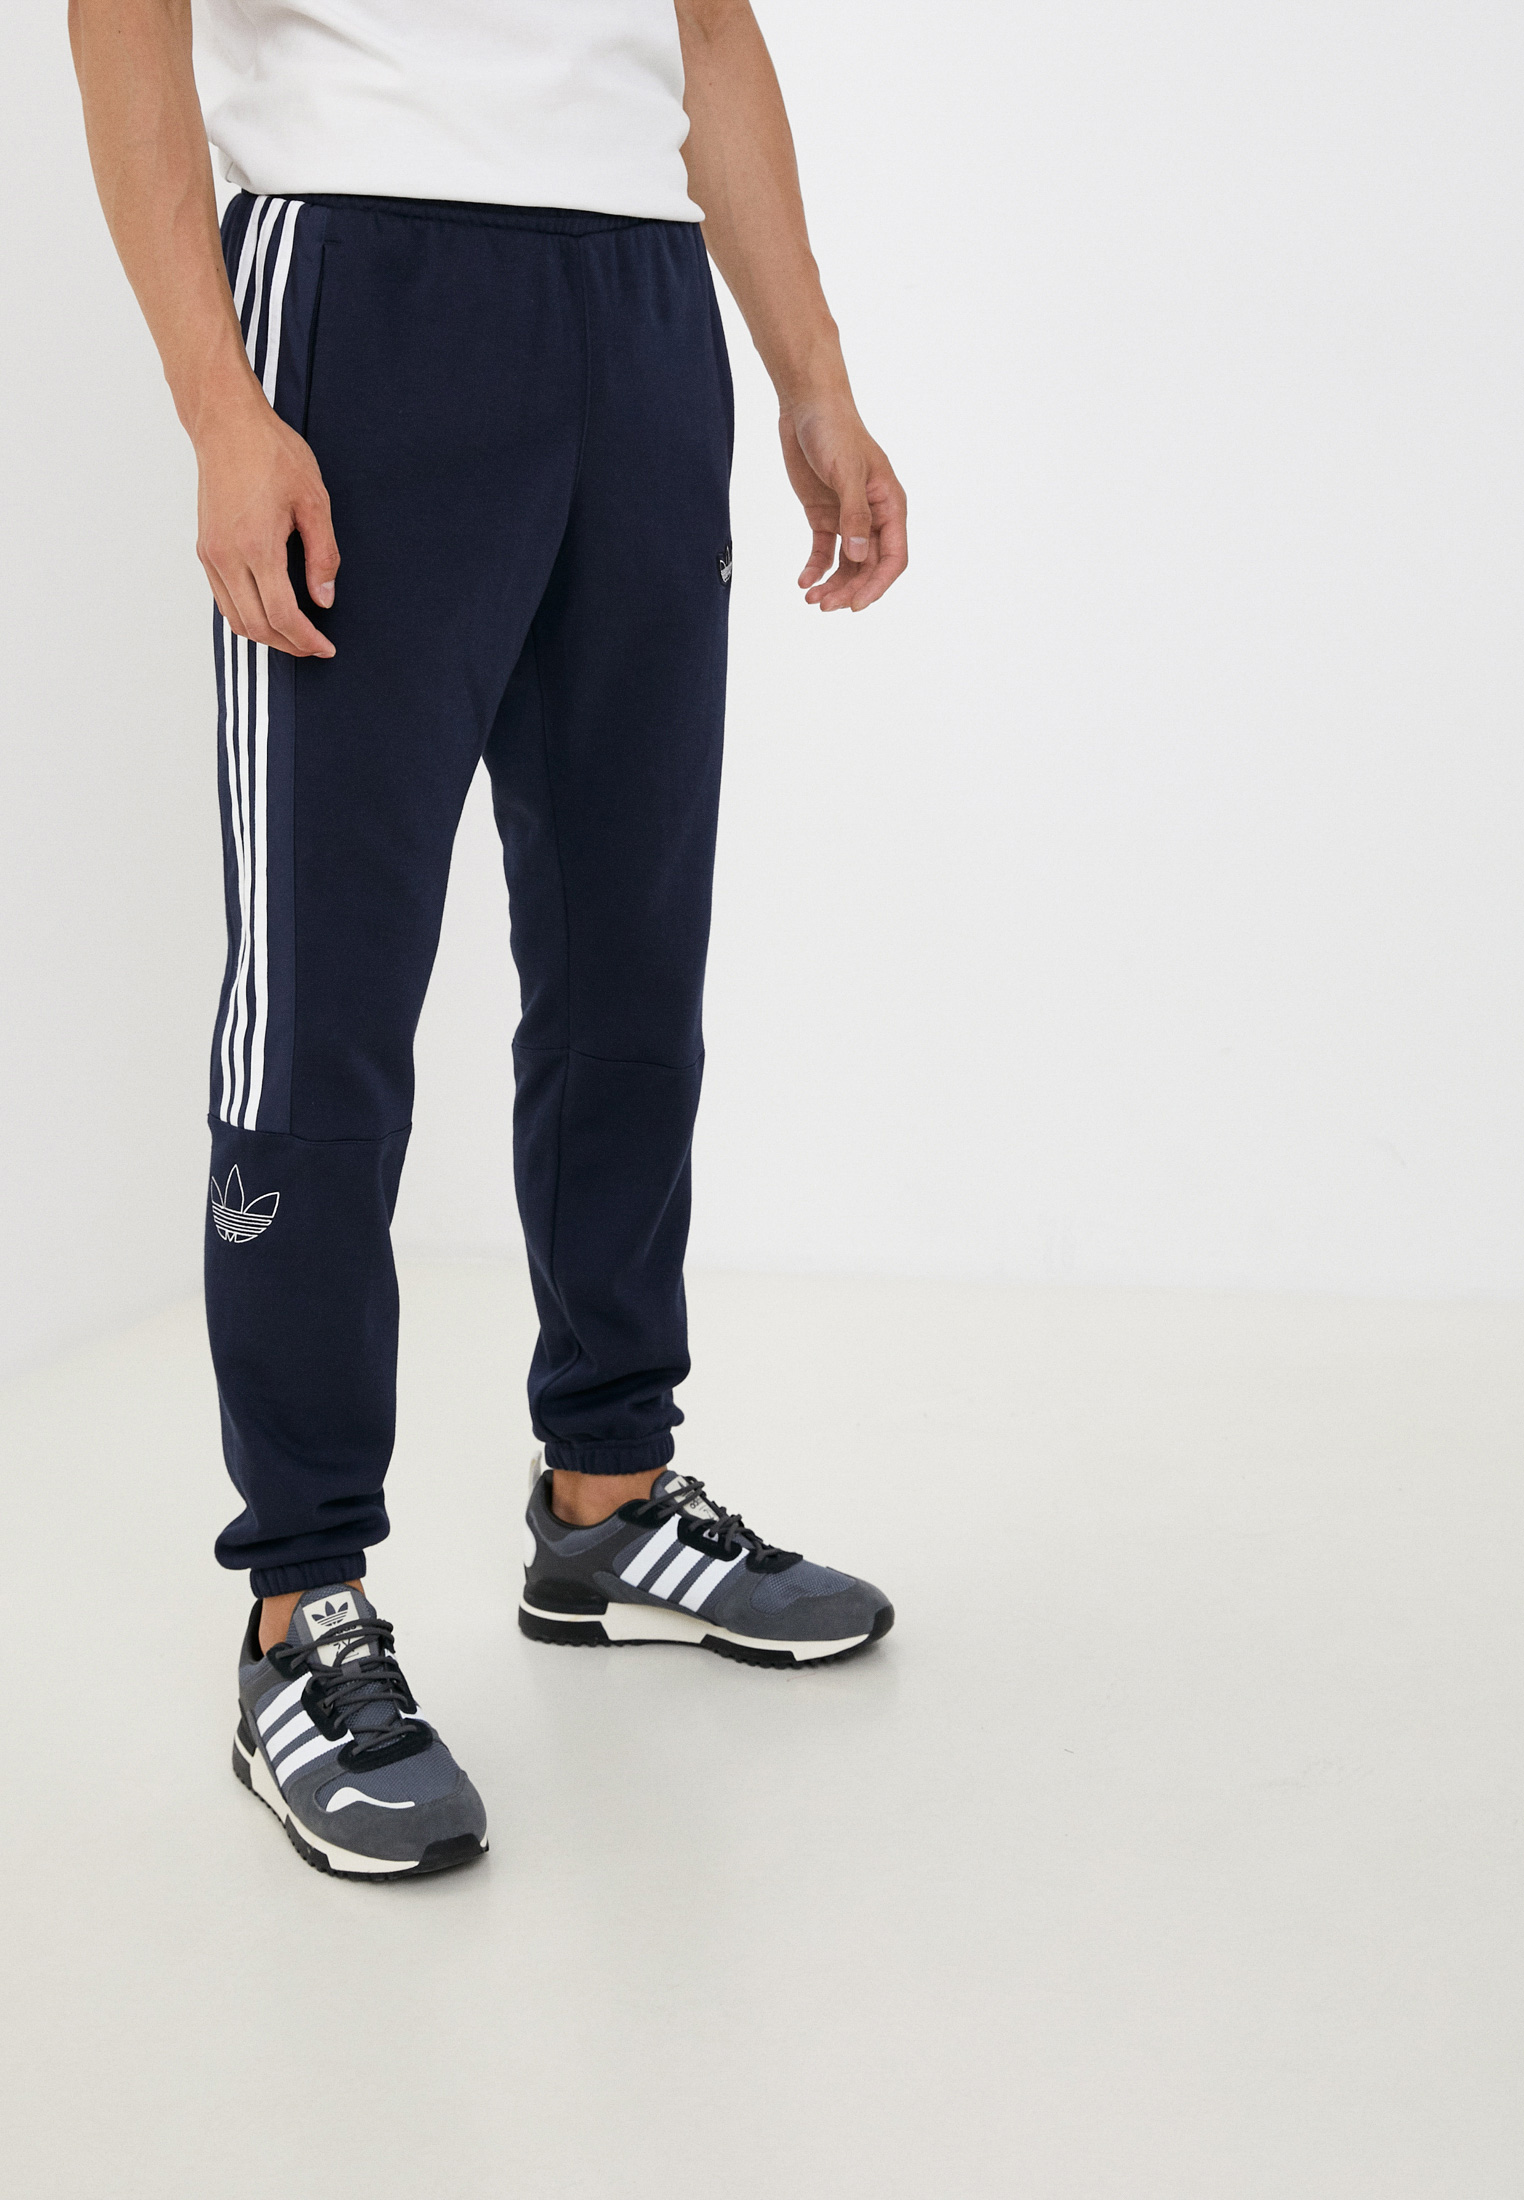 Мужские спортивные брюки Adidas Originals (Адидас Ориджиналс) EJ8792 купить  за 2960 руб.